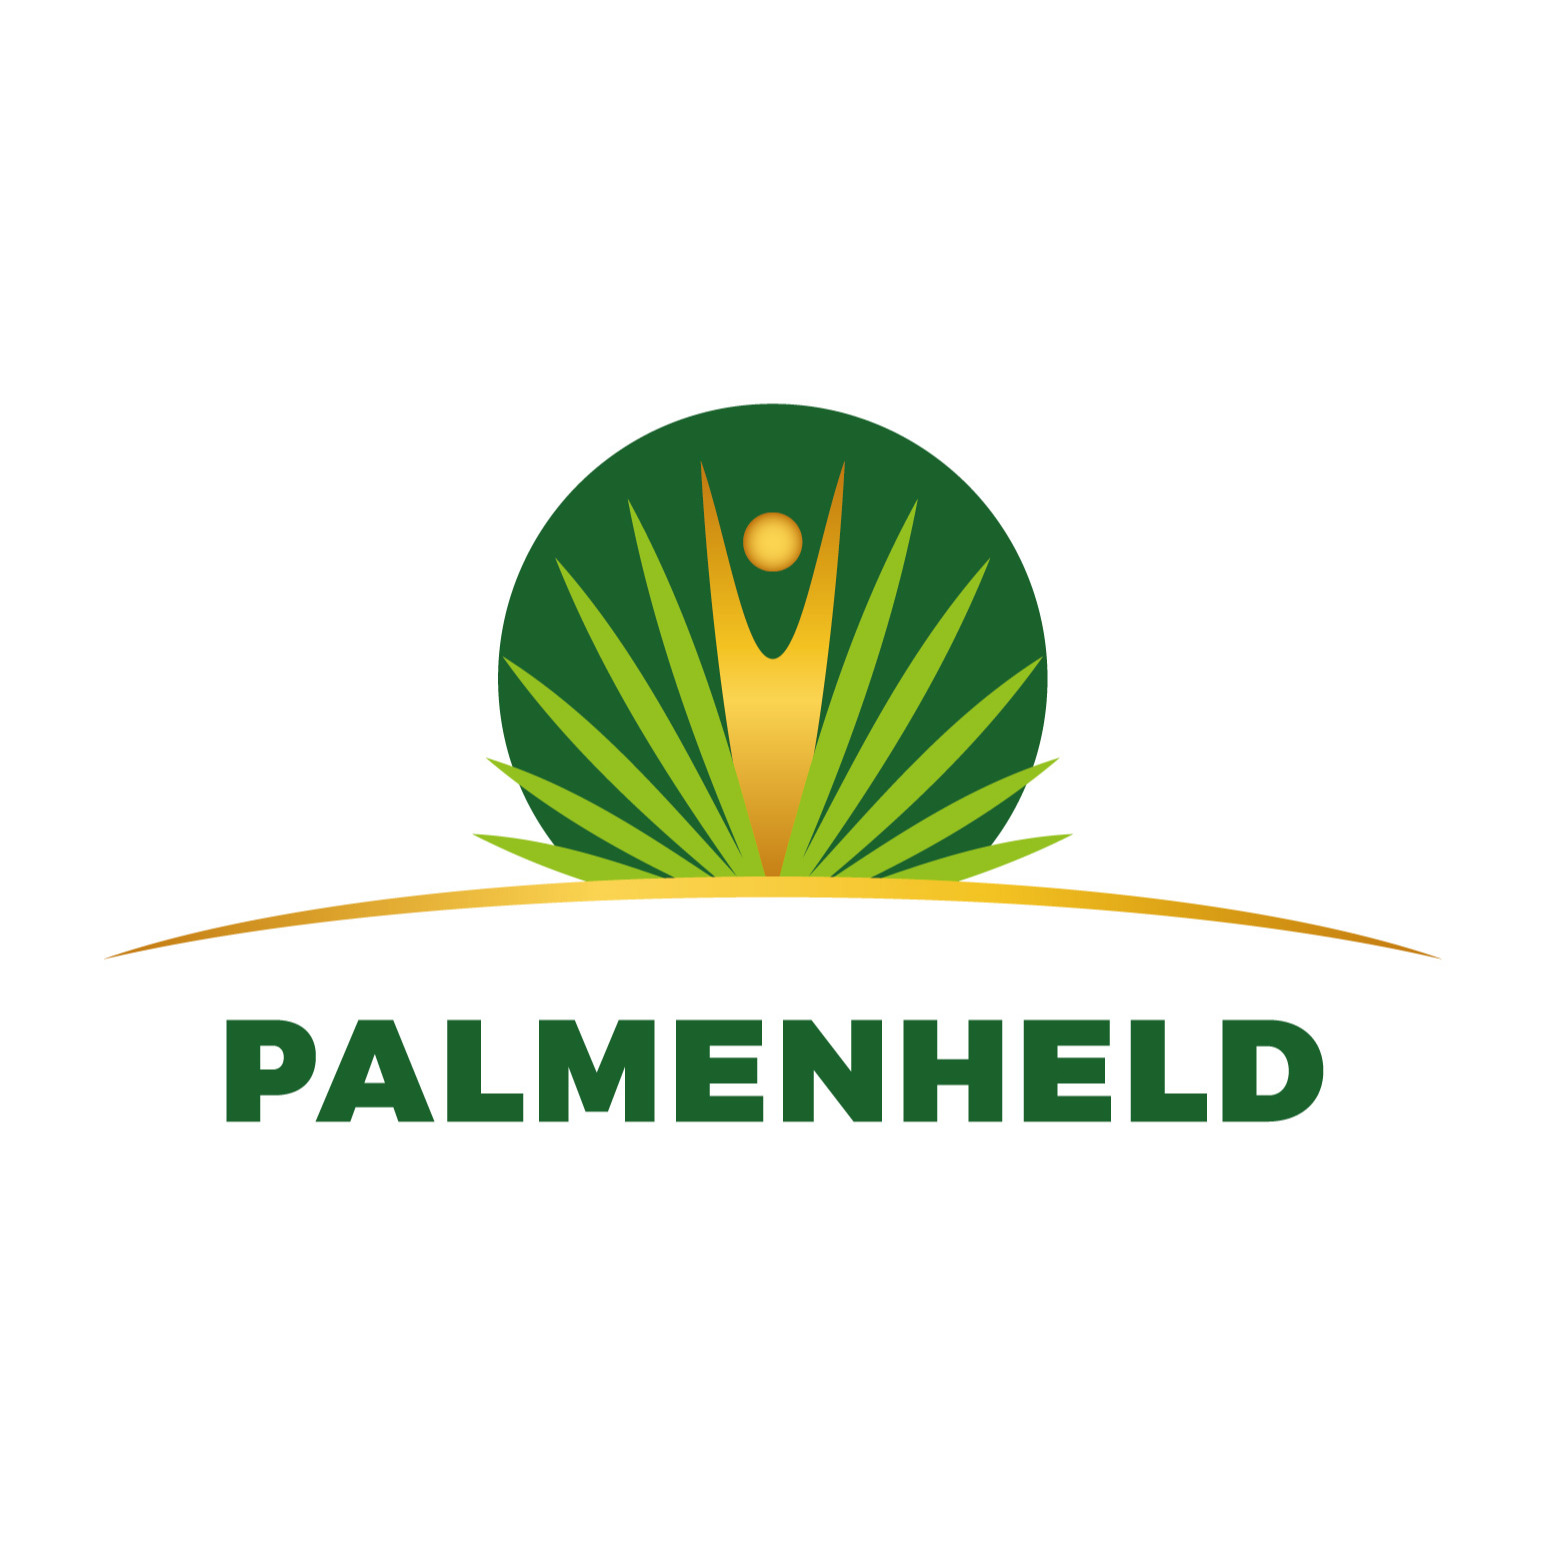 Palmenheld in Münster - Logo